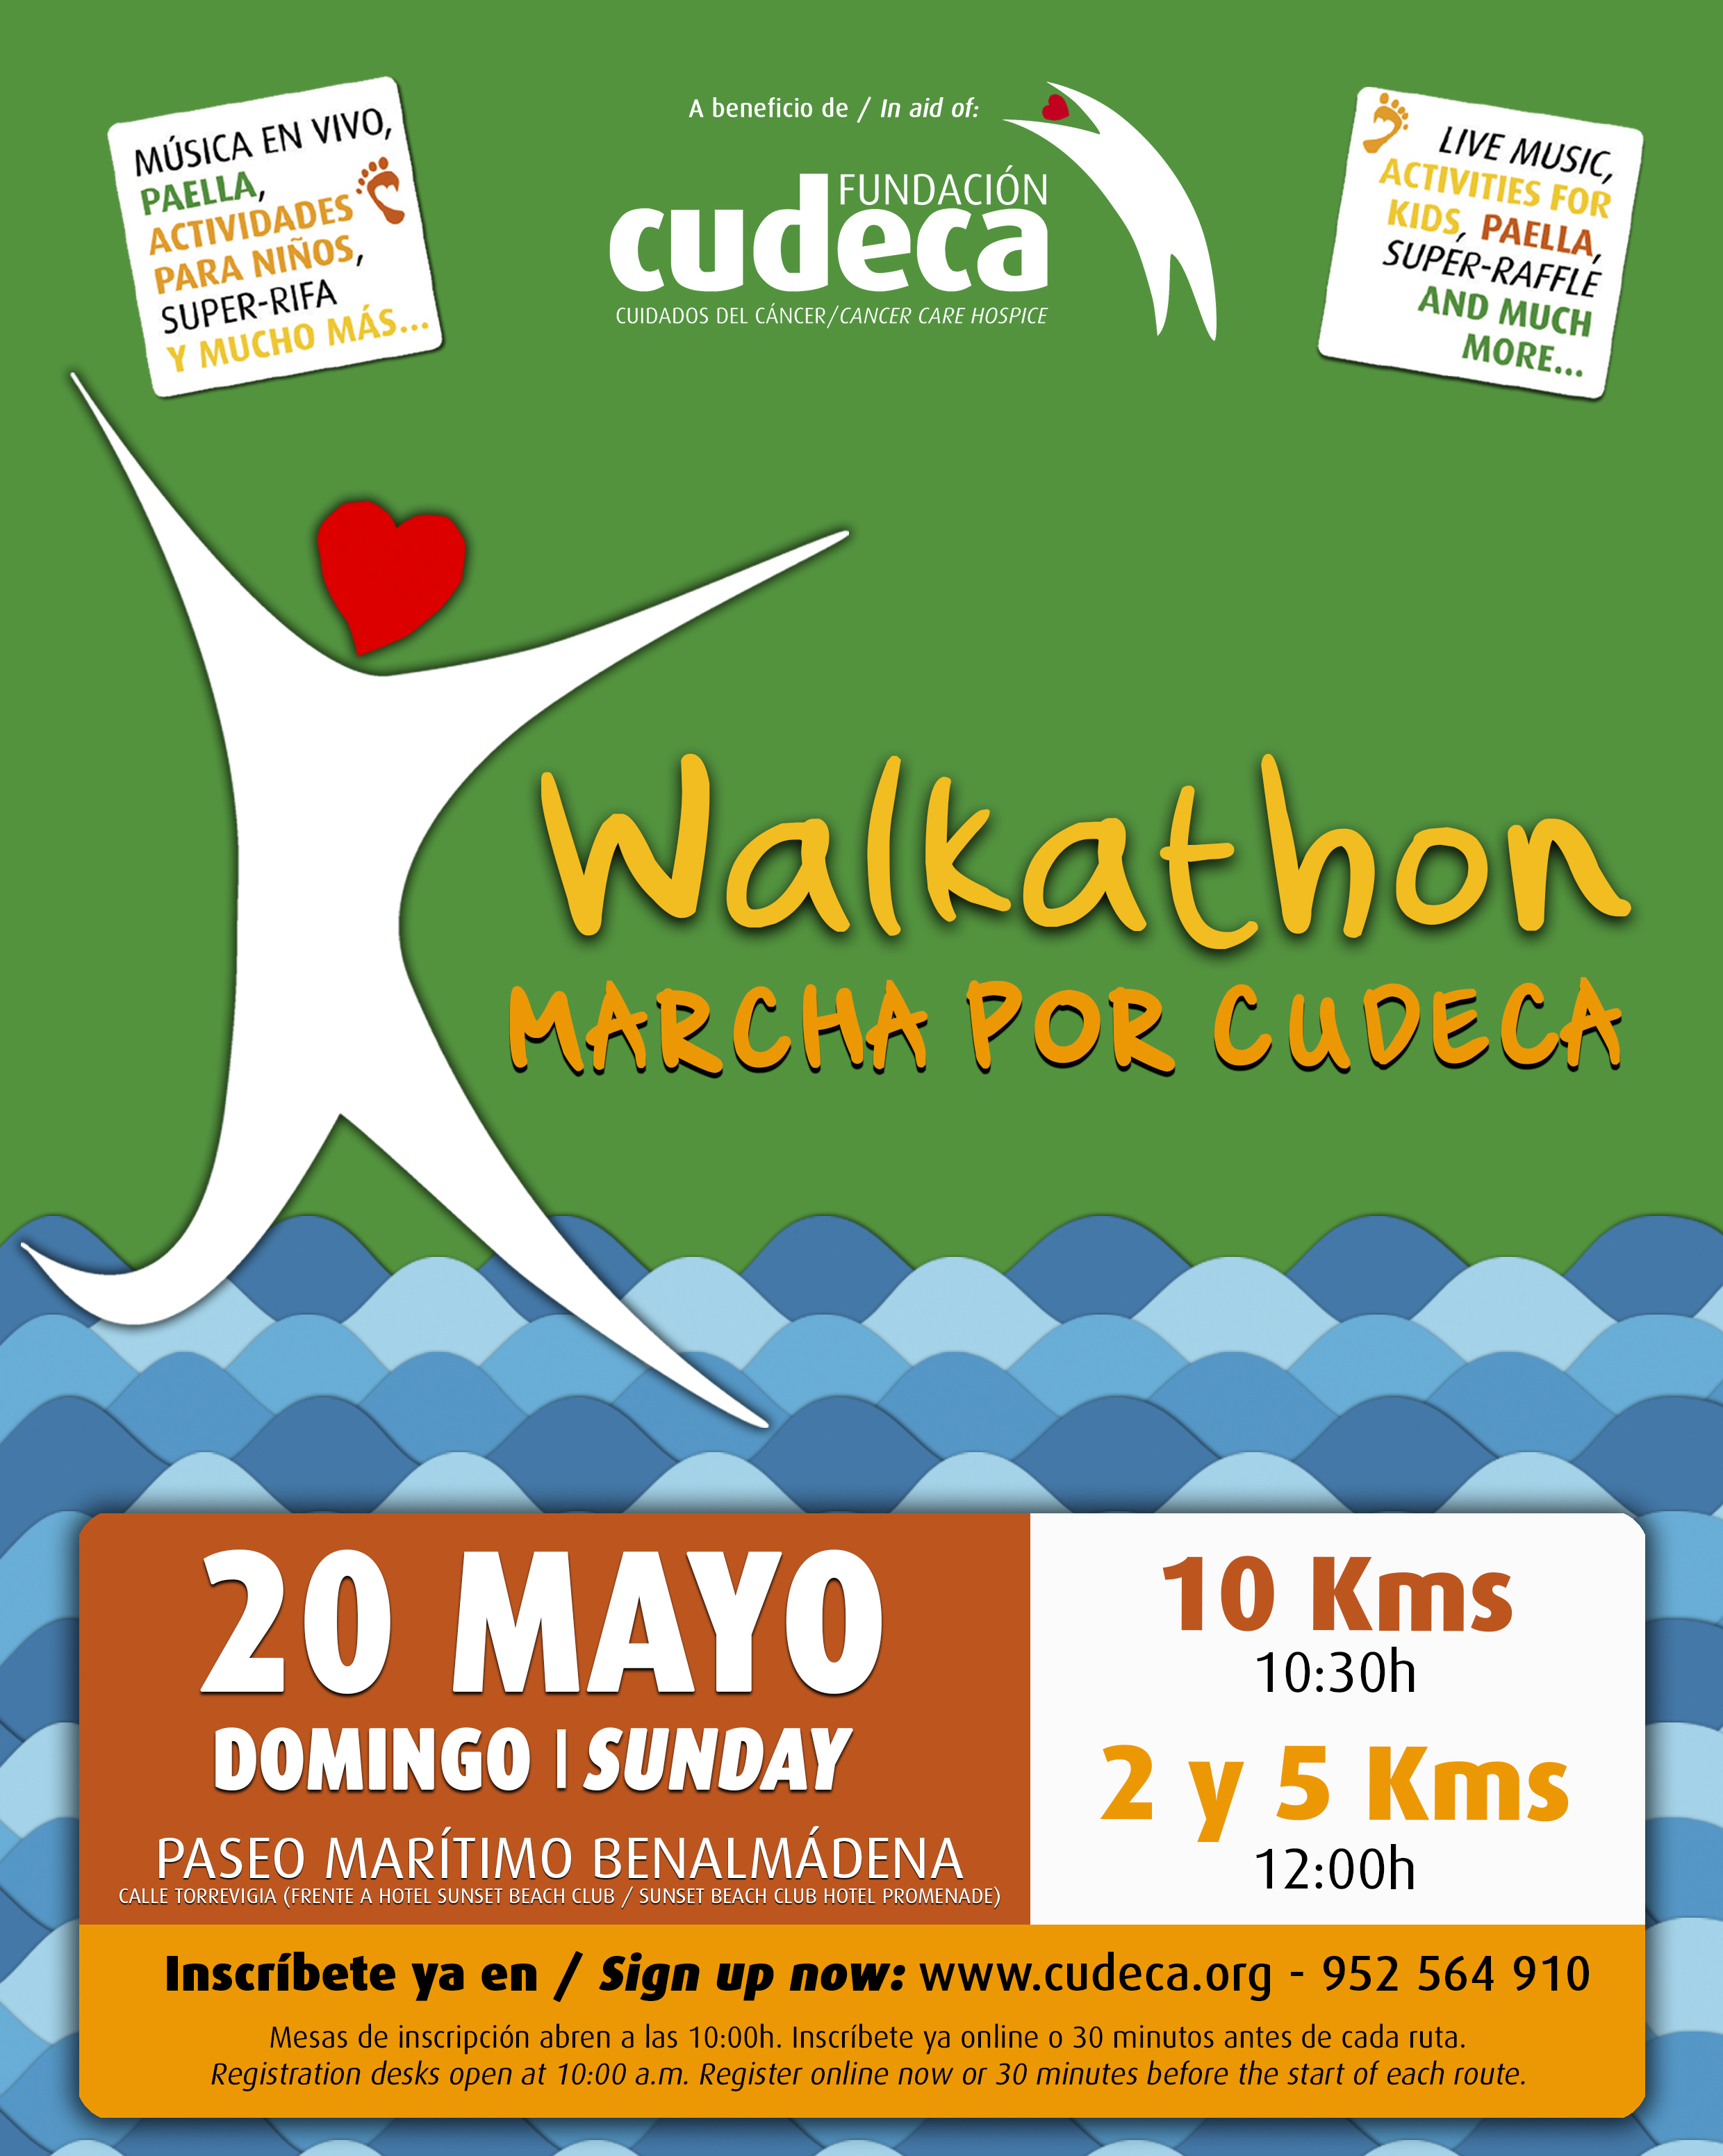 Marcha por CUDECA – Walkathon 2018